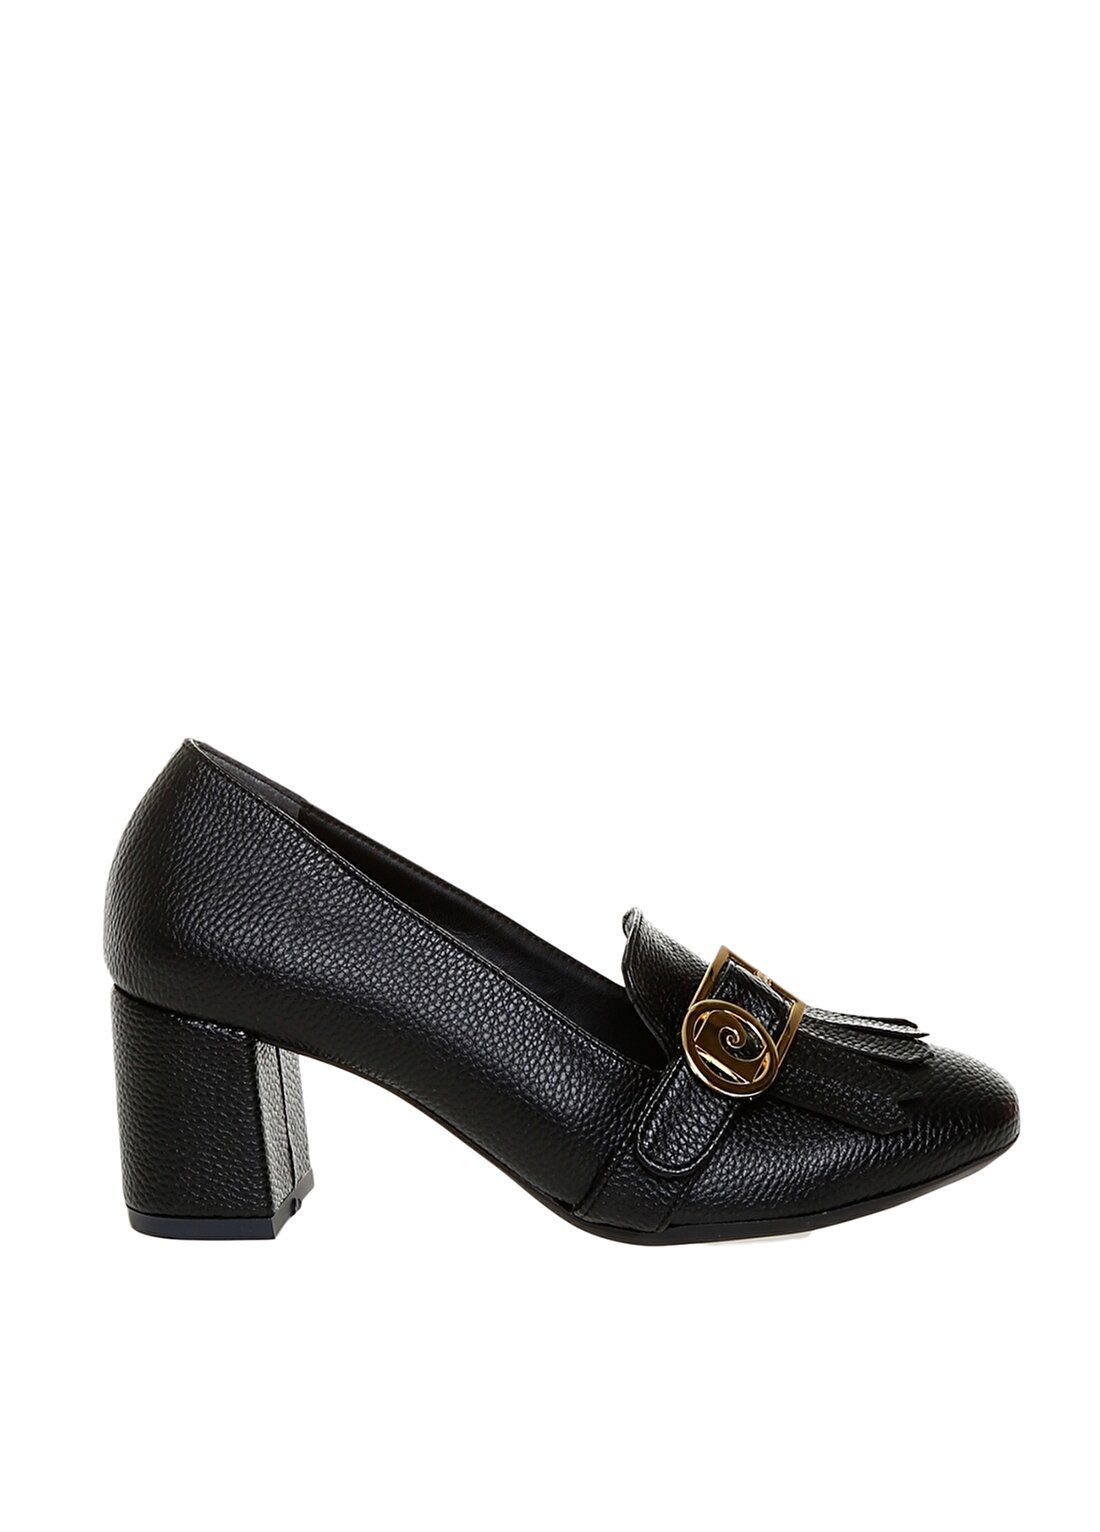 Pierre Cardin Logo Tokalı Siyah Kadın Topuklu Ayakkabı